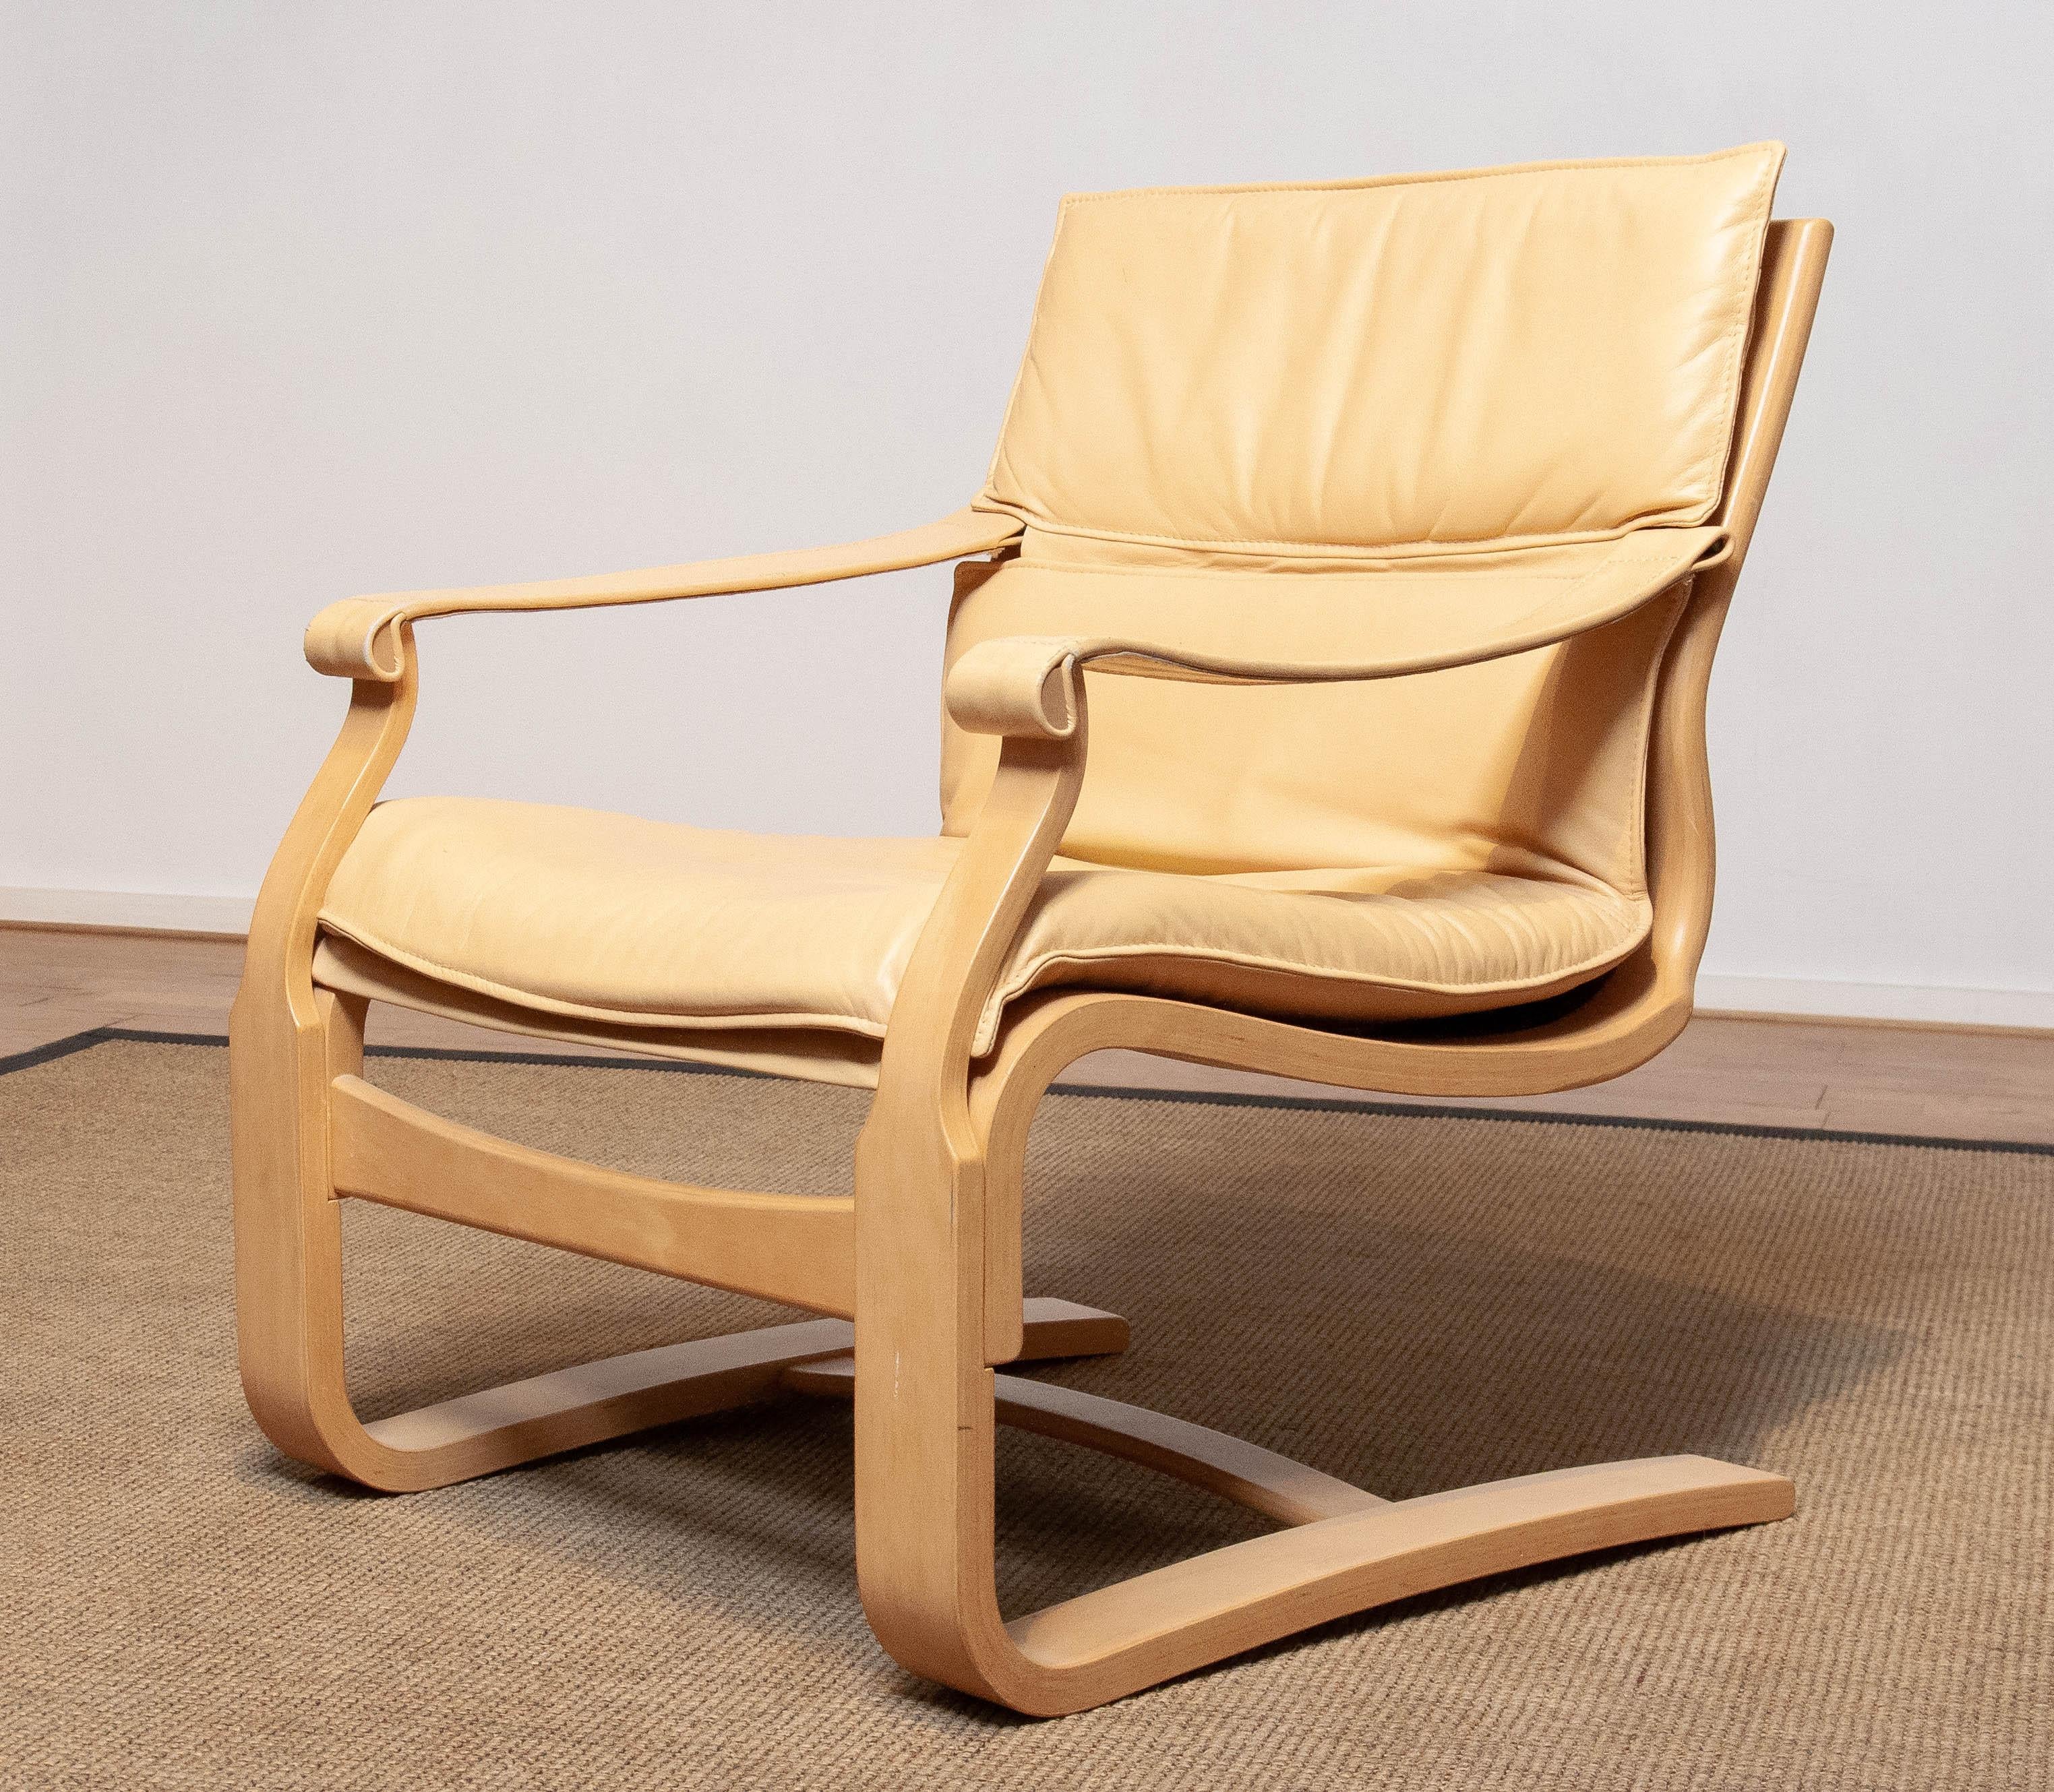 Chaise de salon en hêtre courbé, conçue par Ake Fribytter et fabriquée par Nelo dans les années 1970, recouverte de cuir beige/crème, en bon état et très confortable.
Veuillez noter que nous disposons de deux chaises dans notre galerie.

Attention